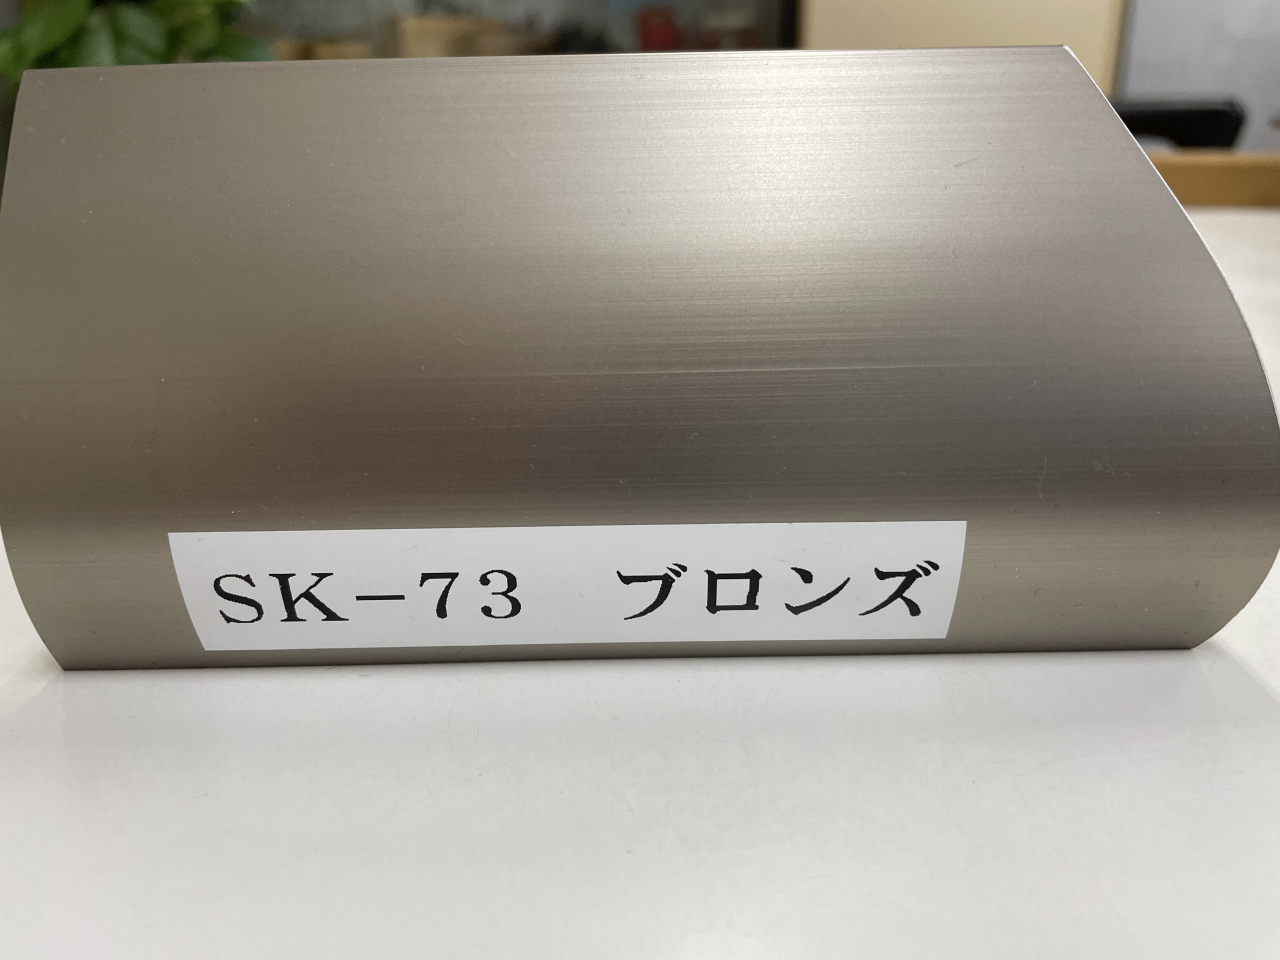 SK-73廃盤のお知らせ